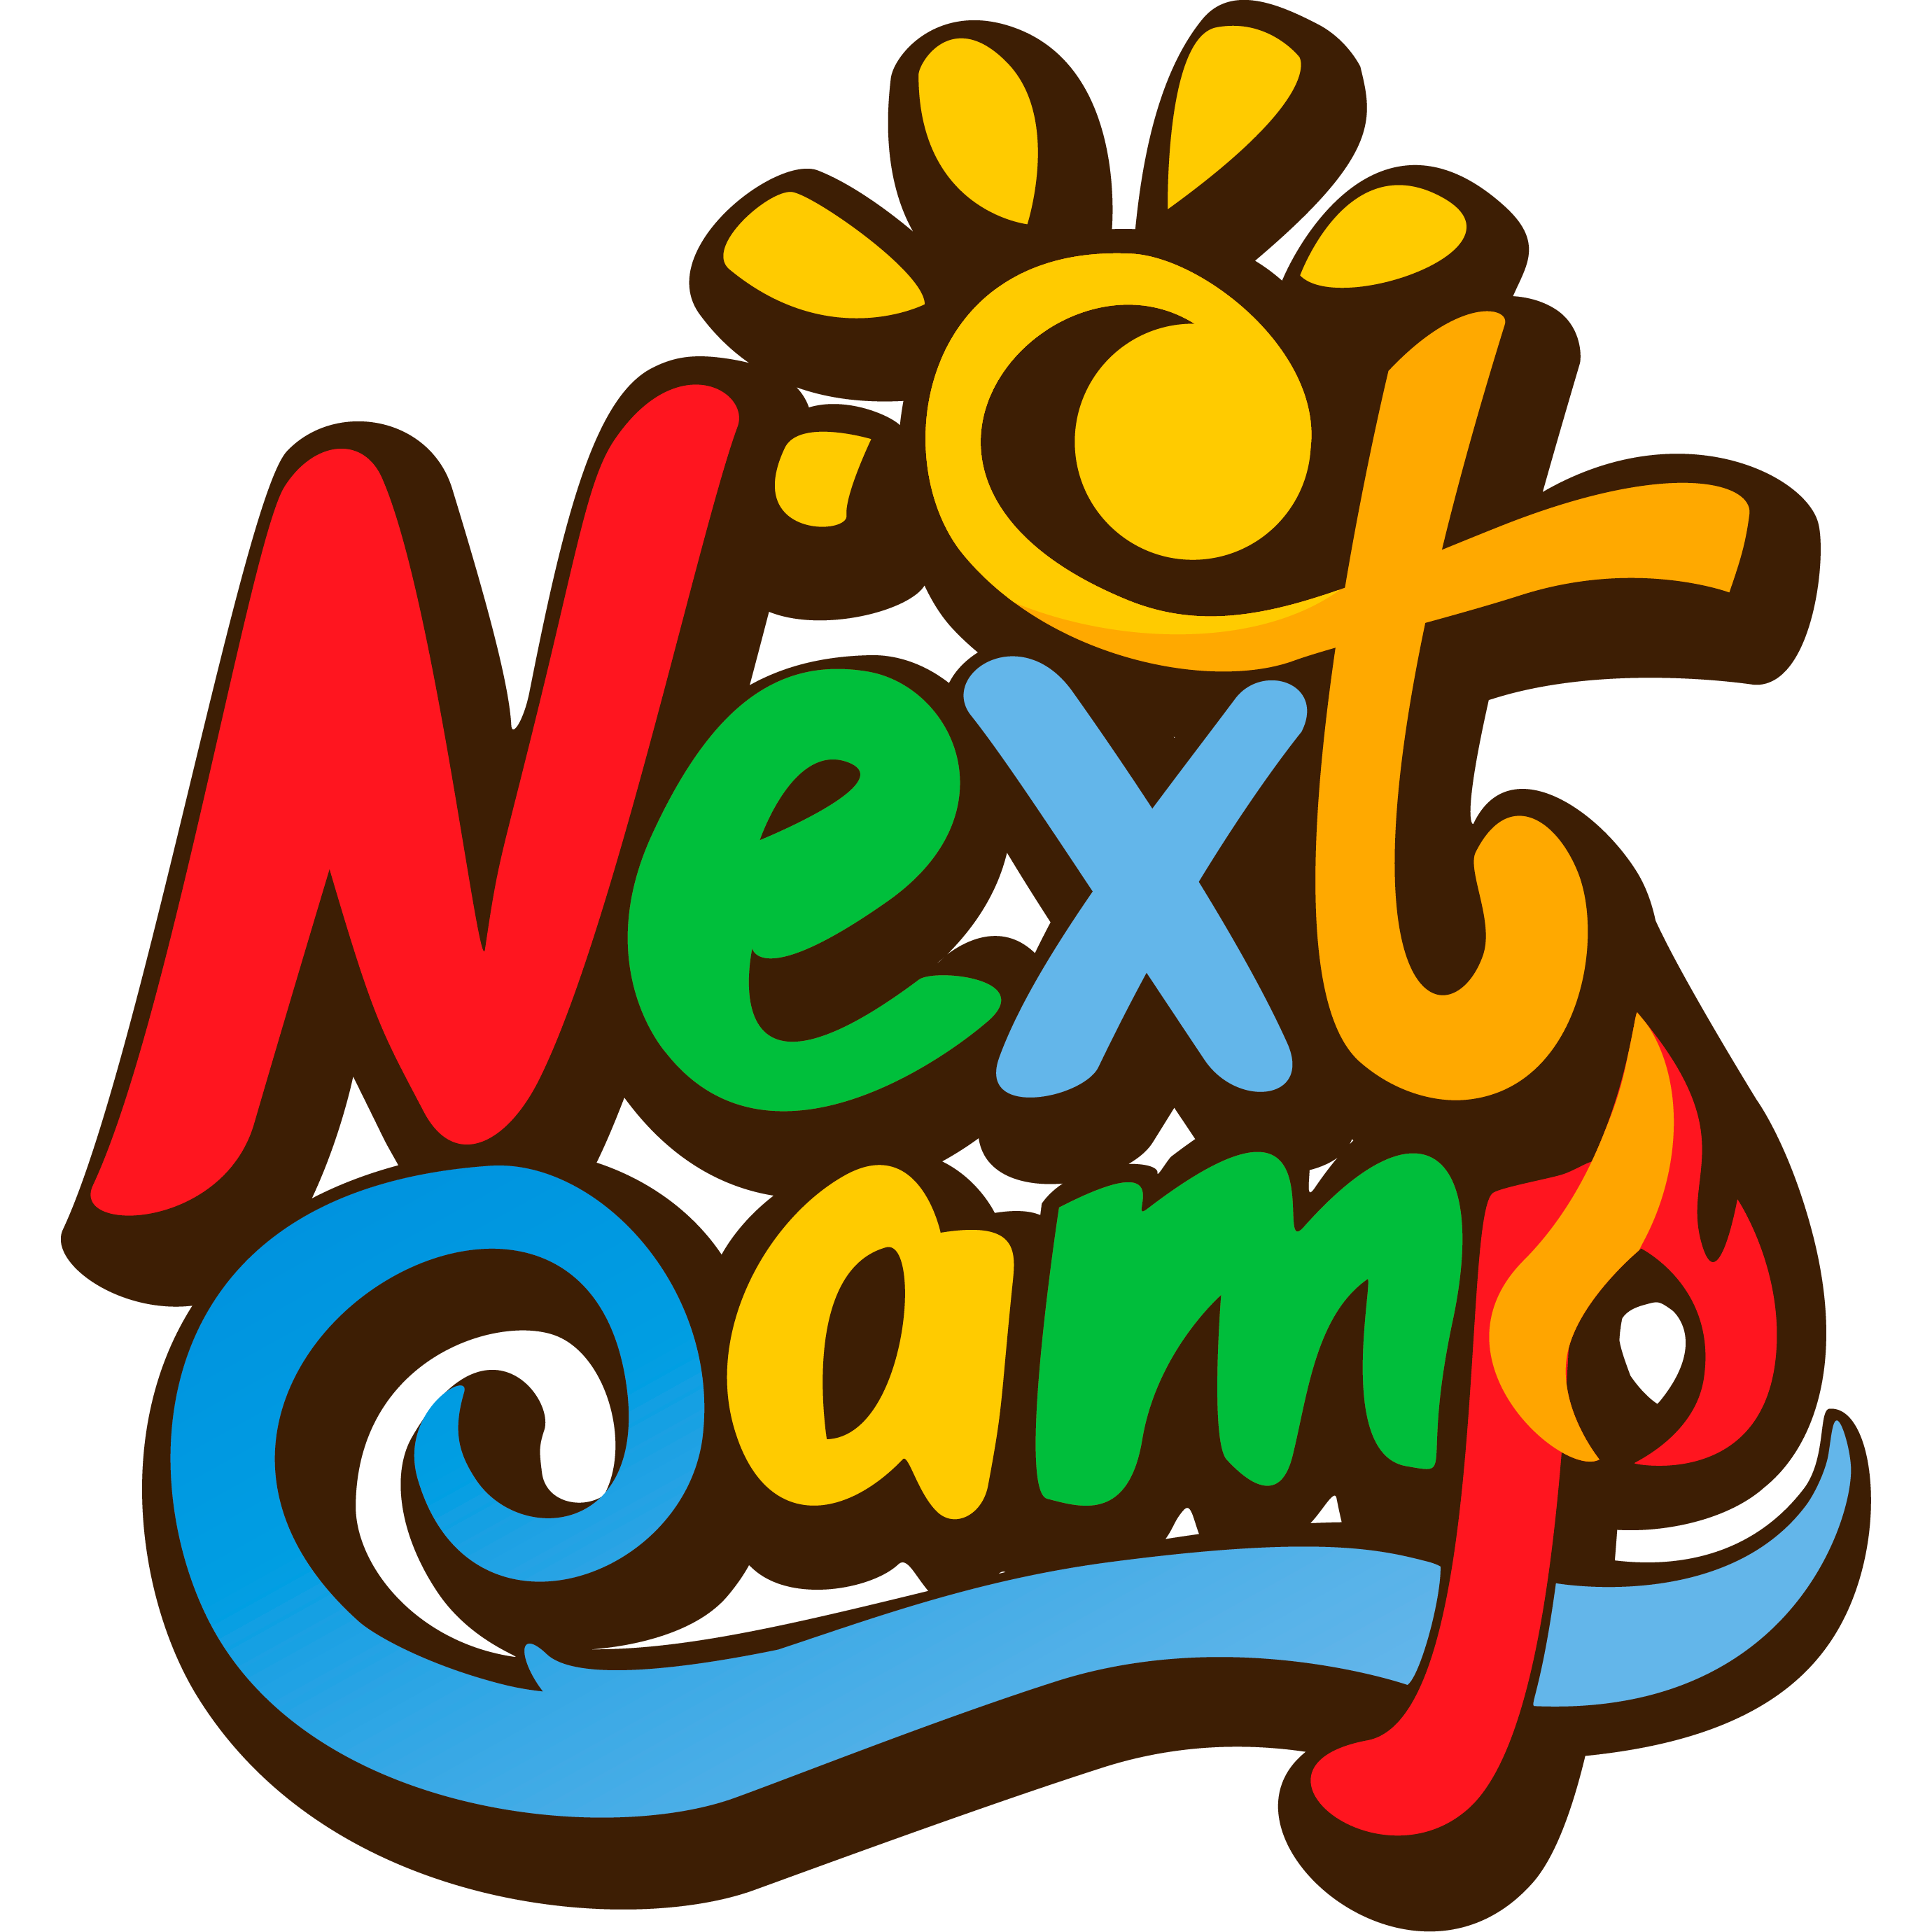 Next camp лагерь. Лагерь Некст Кемп. Логотип лагеря. Логотип детского лагеря. Летний детский лагерь логотип.